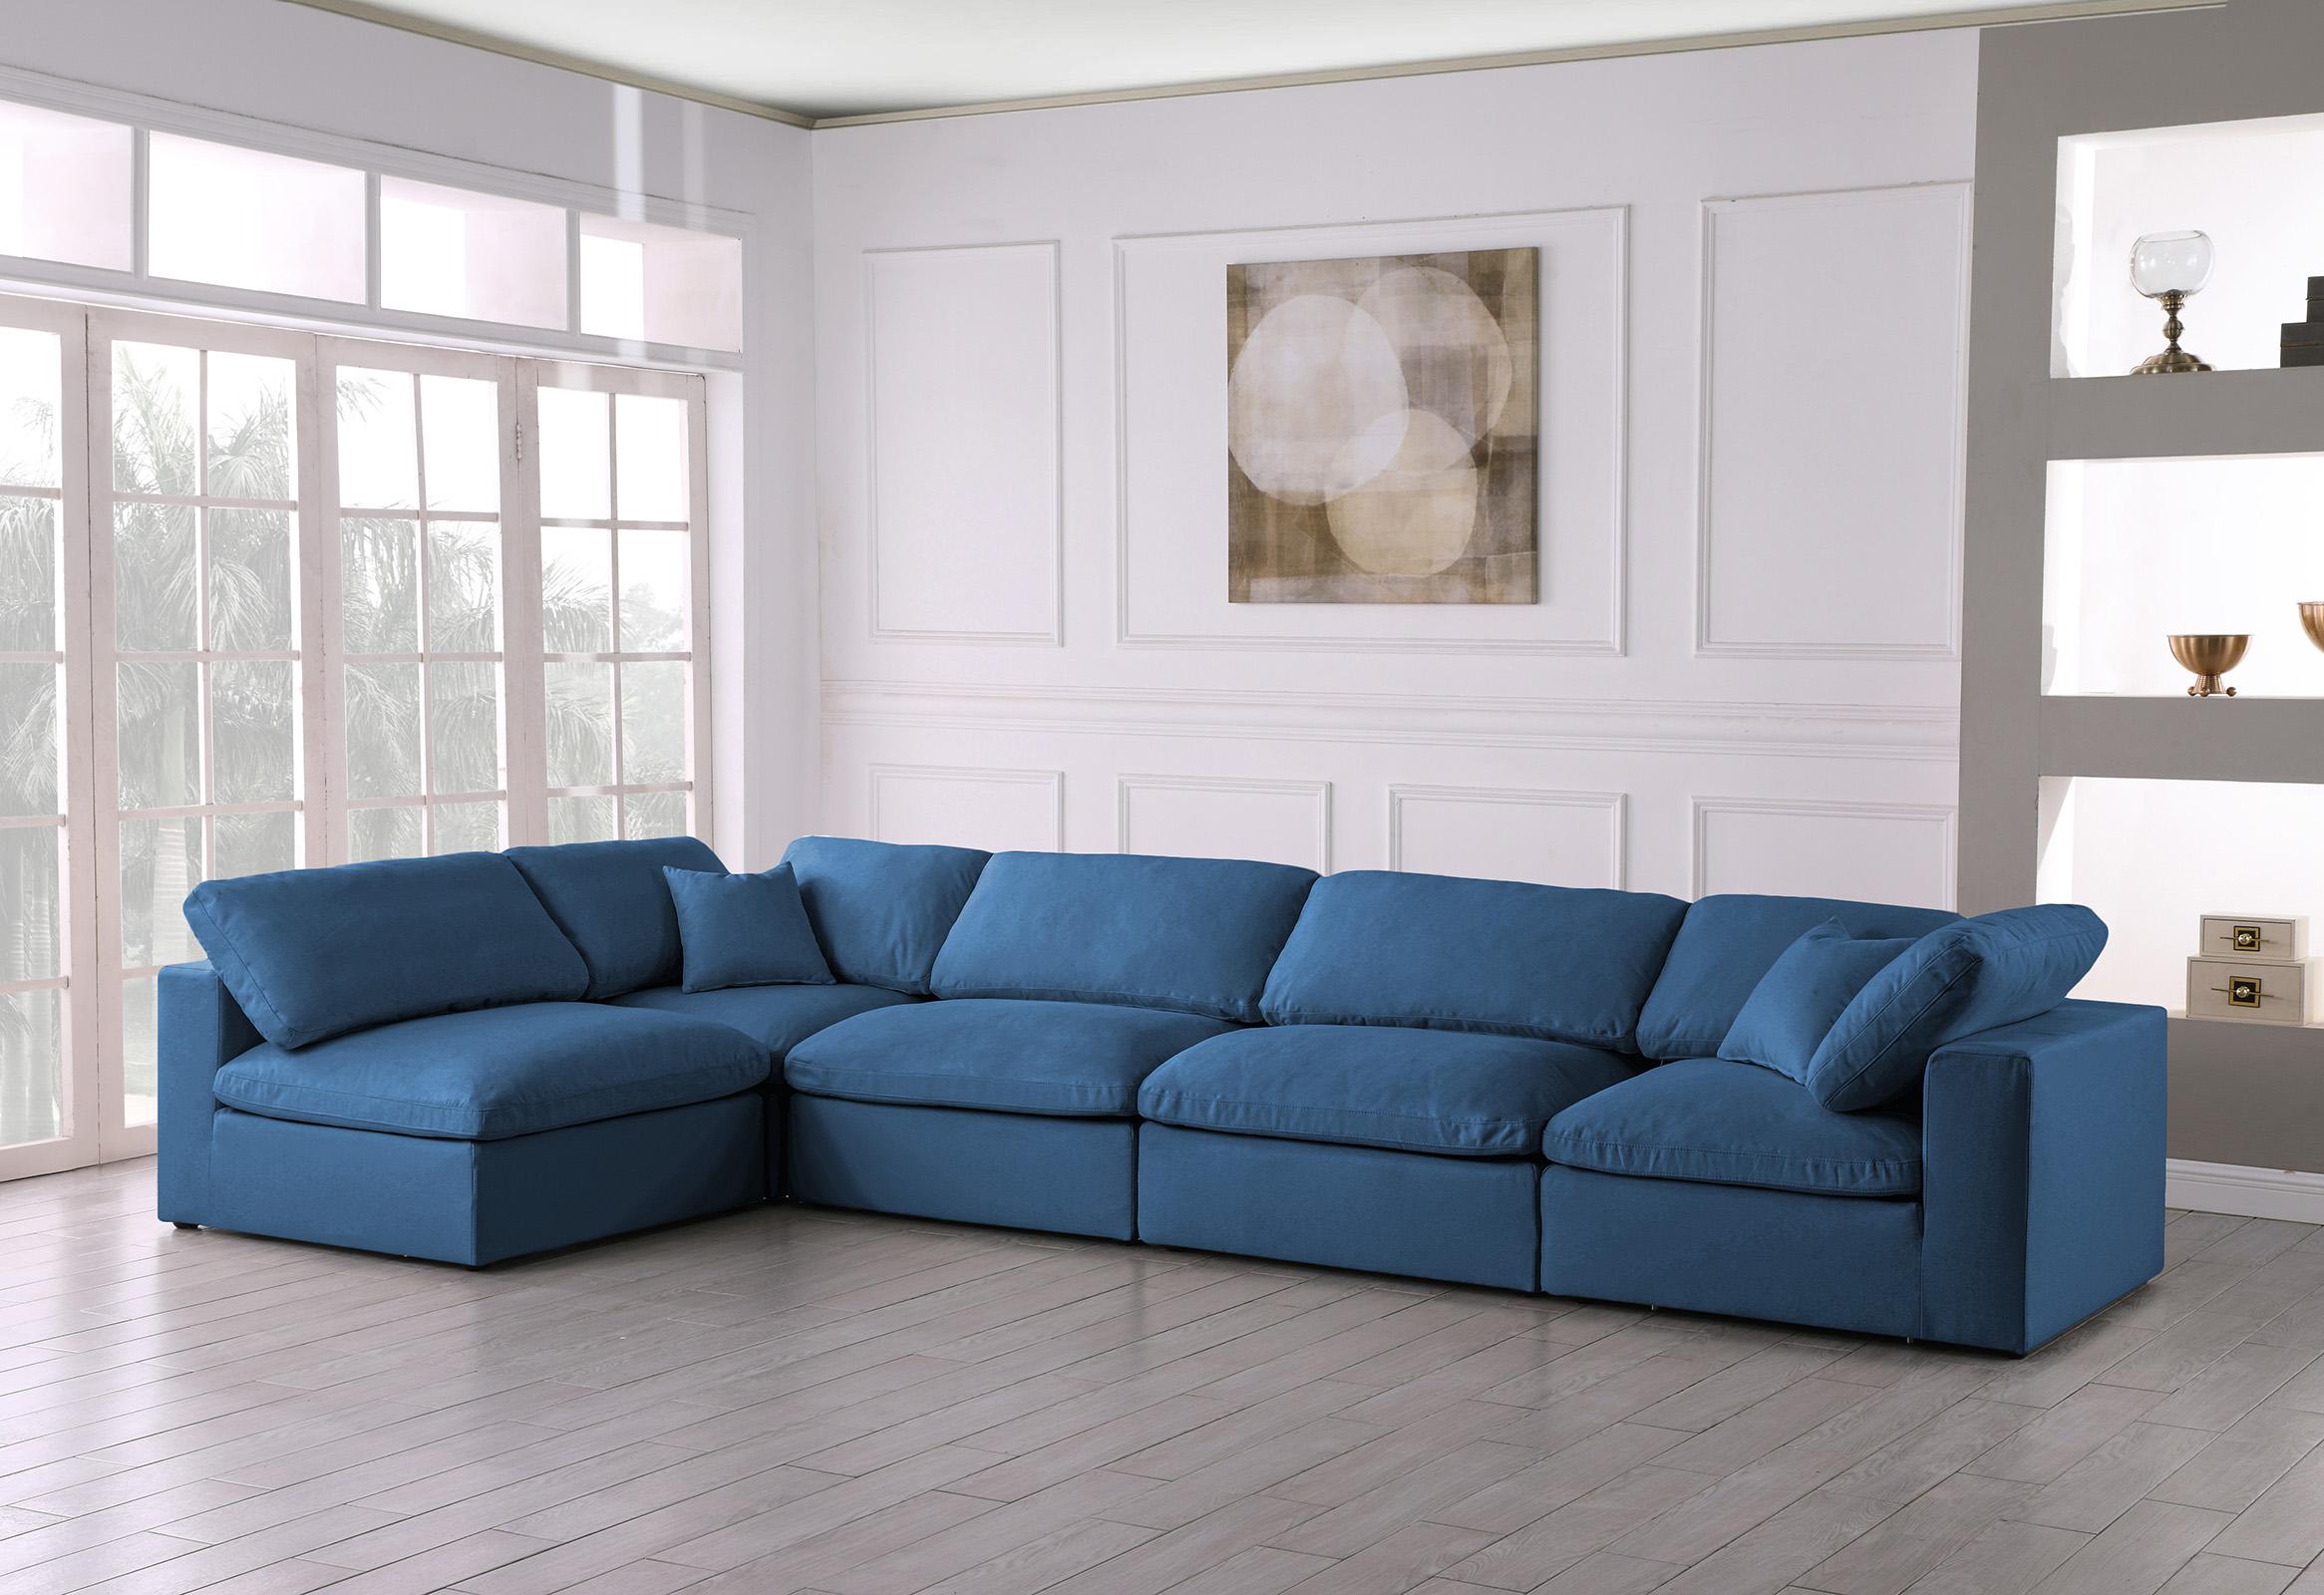 

    
Meridian Furniture 602Navy-Sec5D Modular Sectional Sofa Navy 602Navy-Sec5D
